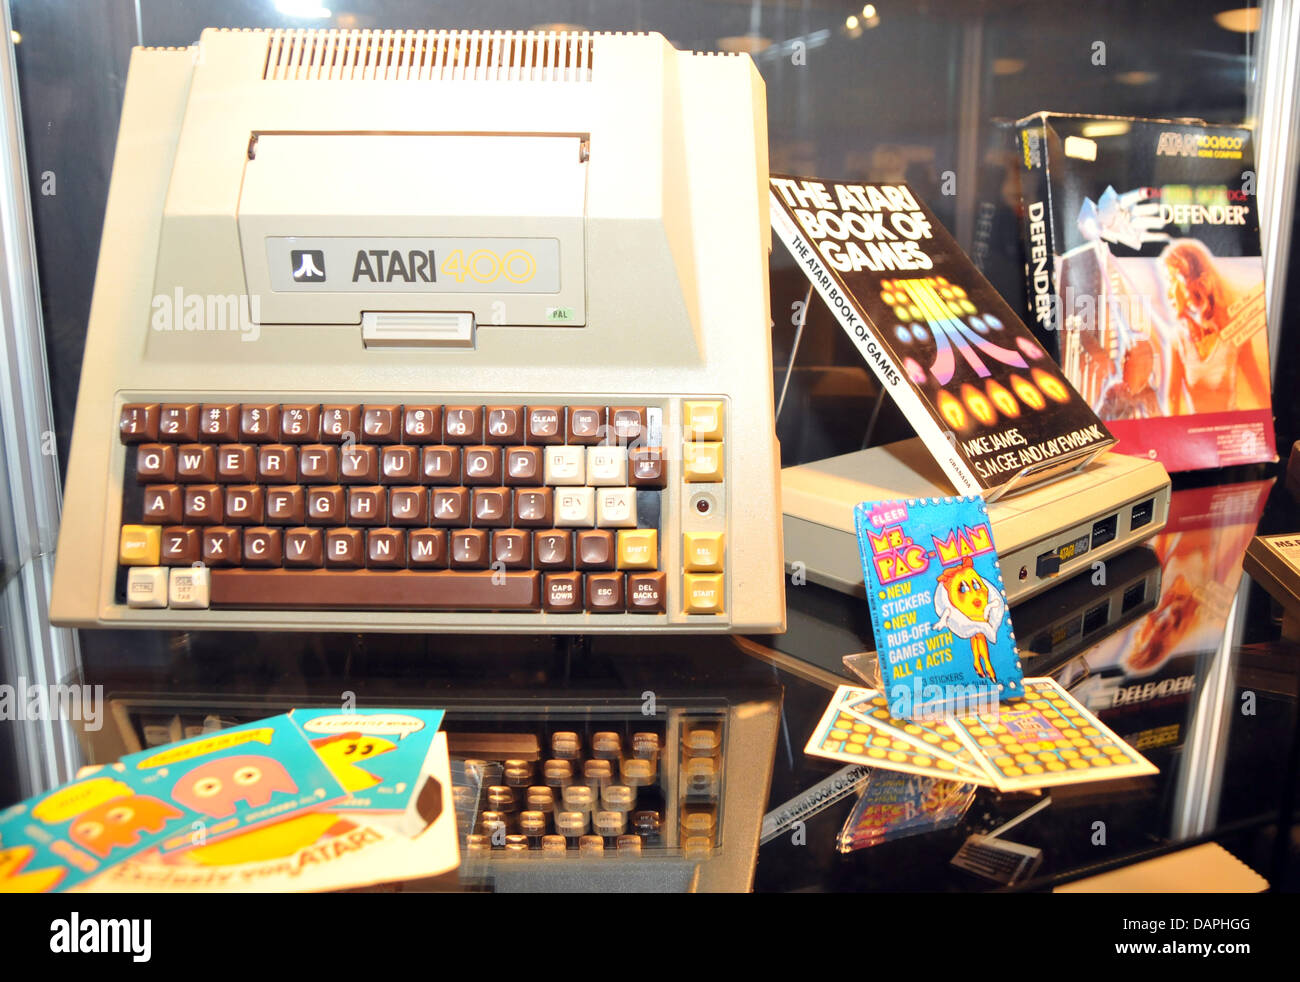 Abgebildet ist ein Heimcomputer Atari 400, zwischen 1979 und 1989, produziert am Computer Spiele-Messe Gamescom in Köln, 21. August 2011. Europas größte Messe für interaktive Spiele und Unterhaltung erlebt Besucheransturm am letzten Wochenende, 20. bis 21. August 2011. 550 Aussteller präsentierten die Messe. Die Trendthemen wurden Online-Spiele und 3D-Spiele. Foto: Jan Stockfoto